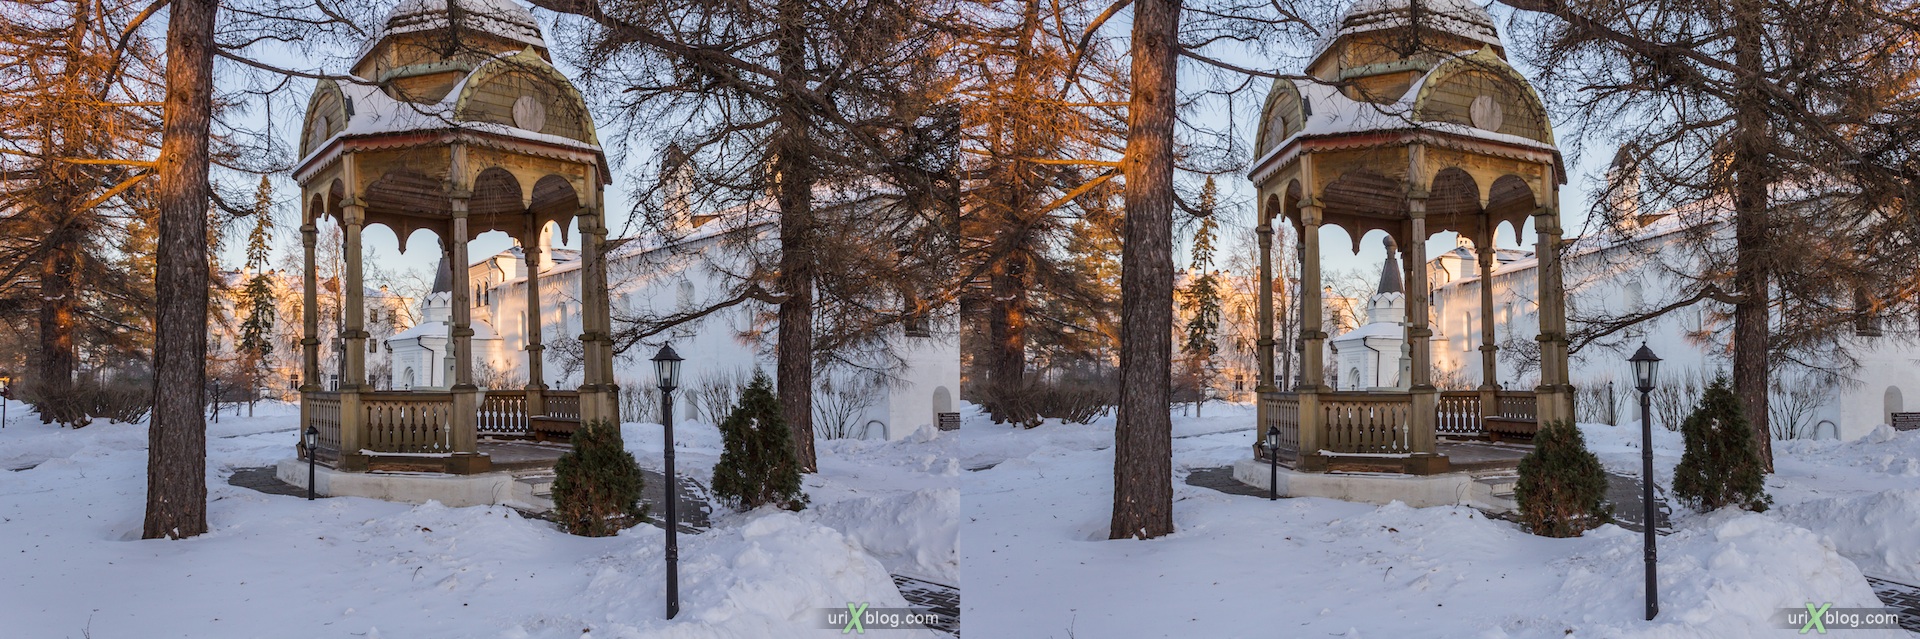 2012, Иосифо-Волоцкий монастырь, Московская область, Россия, зима, снег, утро, мороз, солнце, 3D, перекрёстные стереопары, стерео, стереопара, стереопары